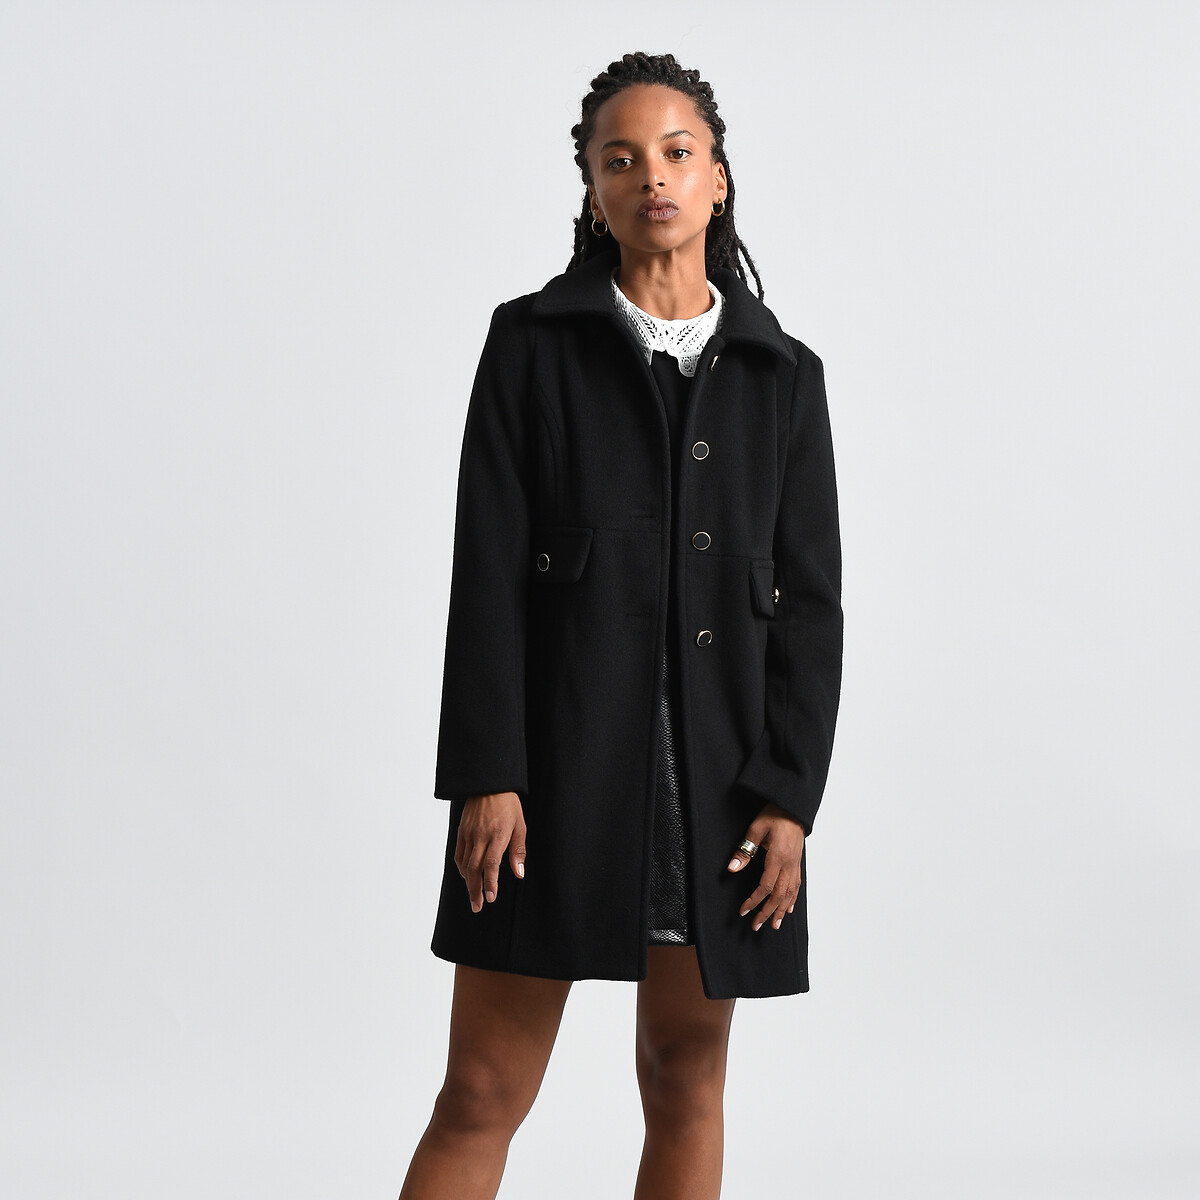 inhalen Veranderlijk Beschikbaar Halflange jas met knoopsluiting zwart Molly Bracken | La Redoute